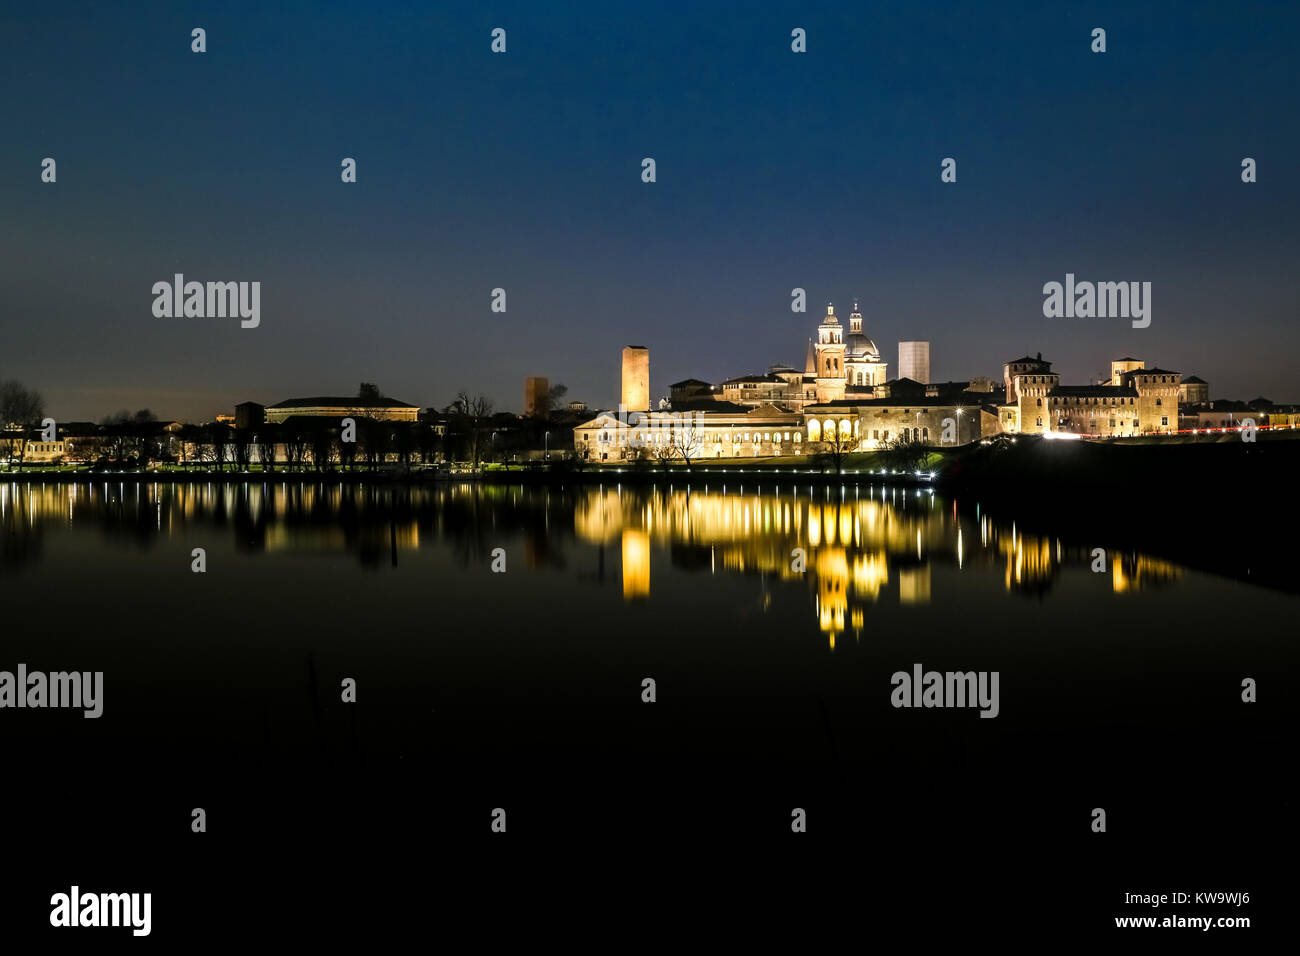 Il palazzo Ducale di Mantova, Italia, riflesso sul lago Mincio a notte. Mantova skyline notturno. Foto Stock